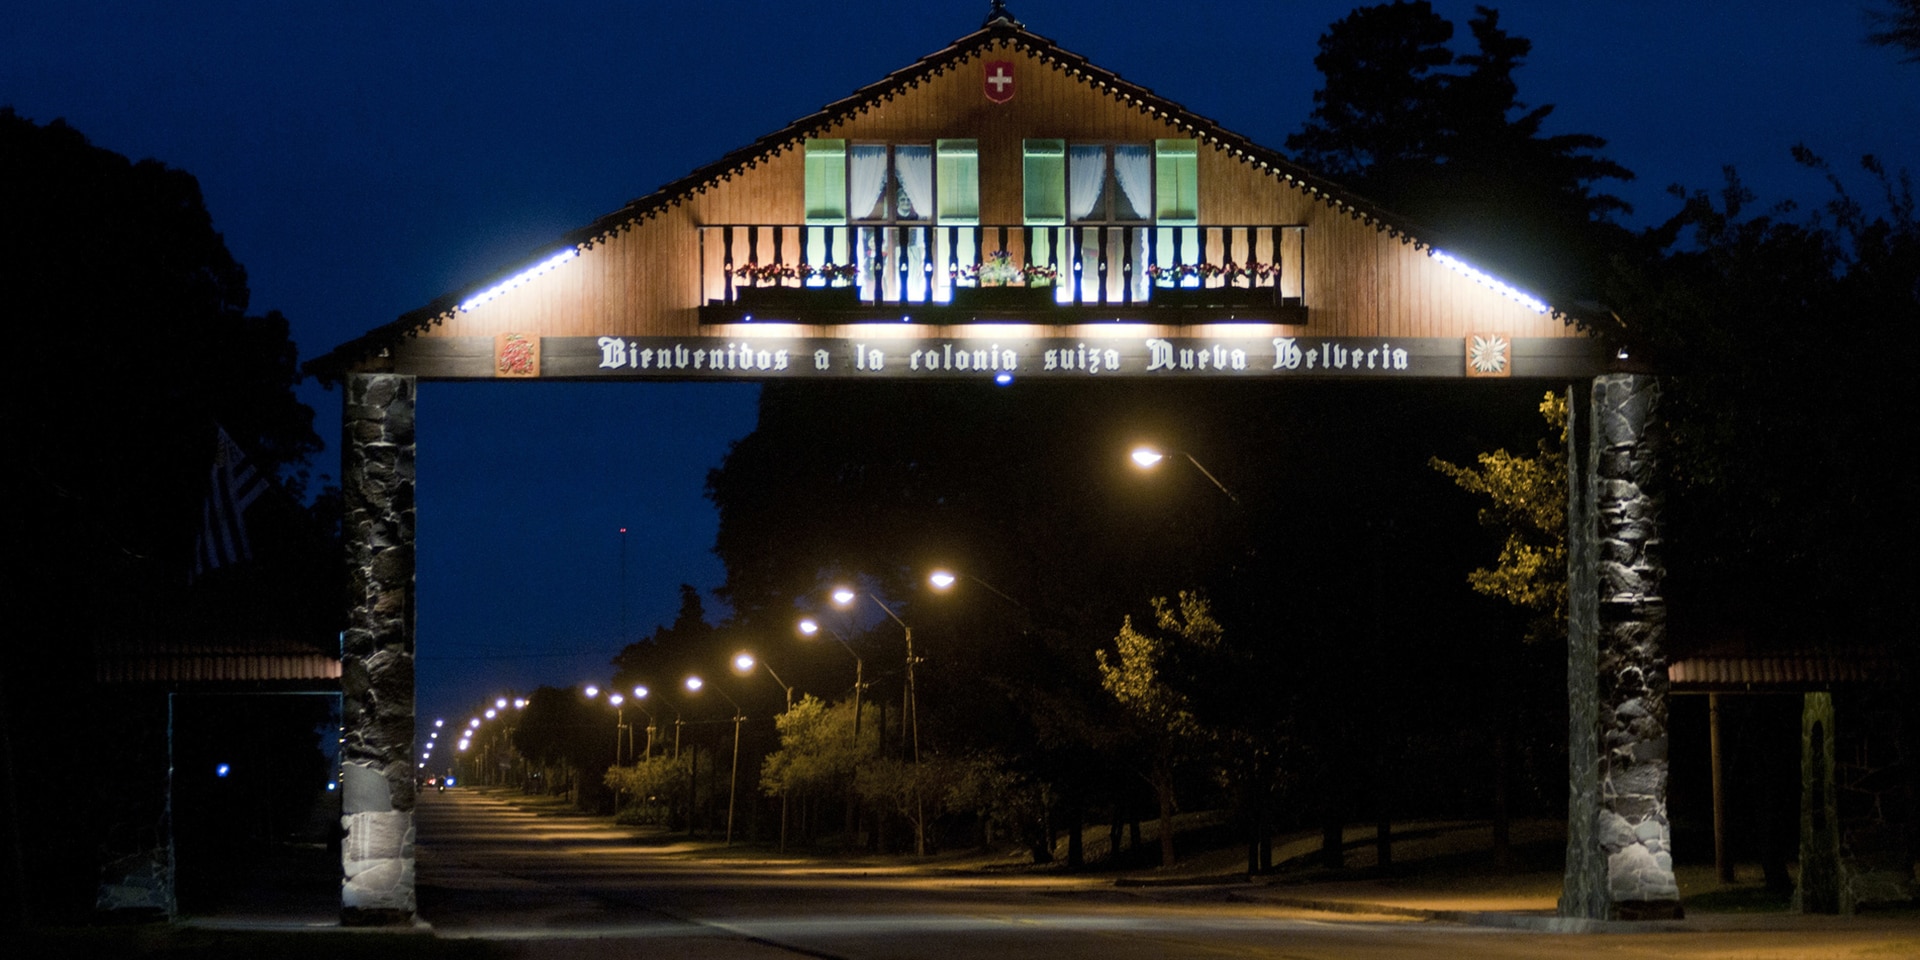 Un porticato che rappresenta un chalet con motivi svizzeri è posto sopra una strada di notte.